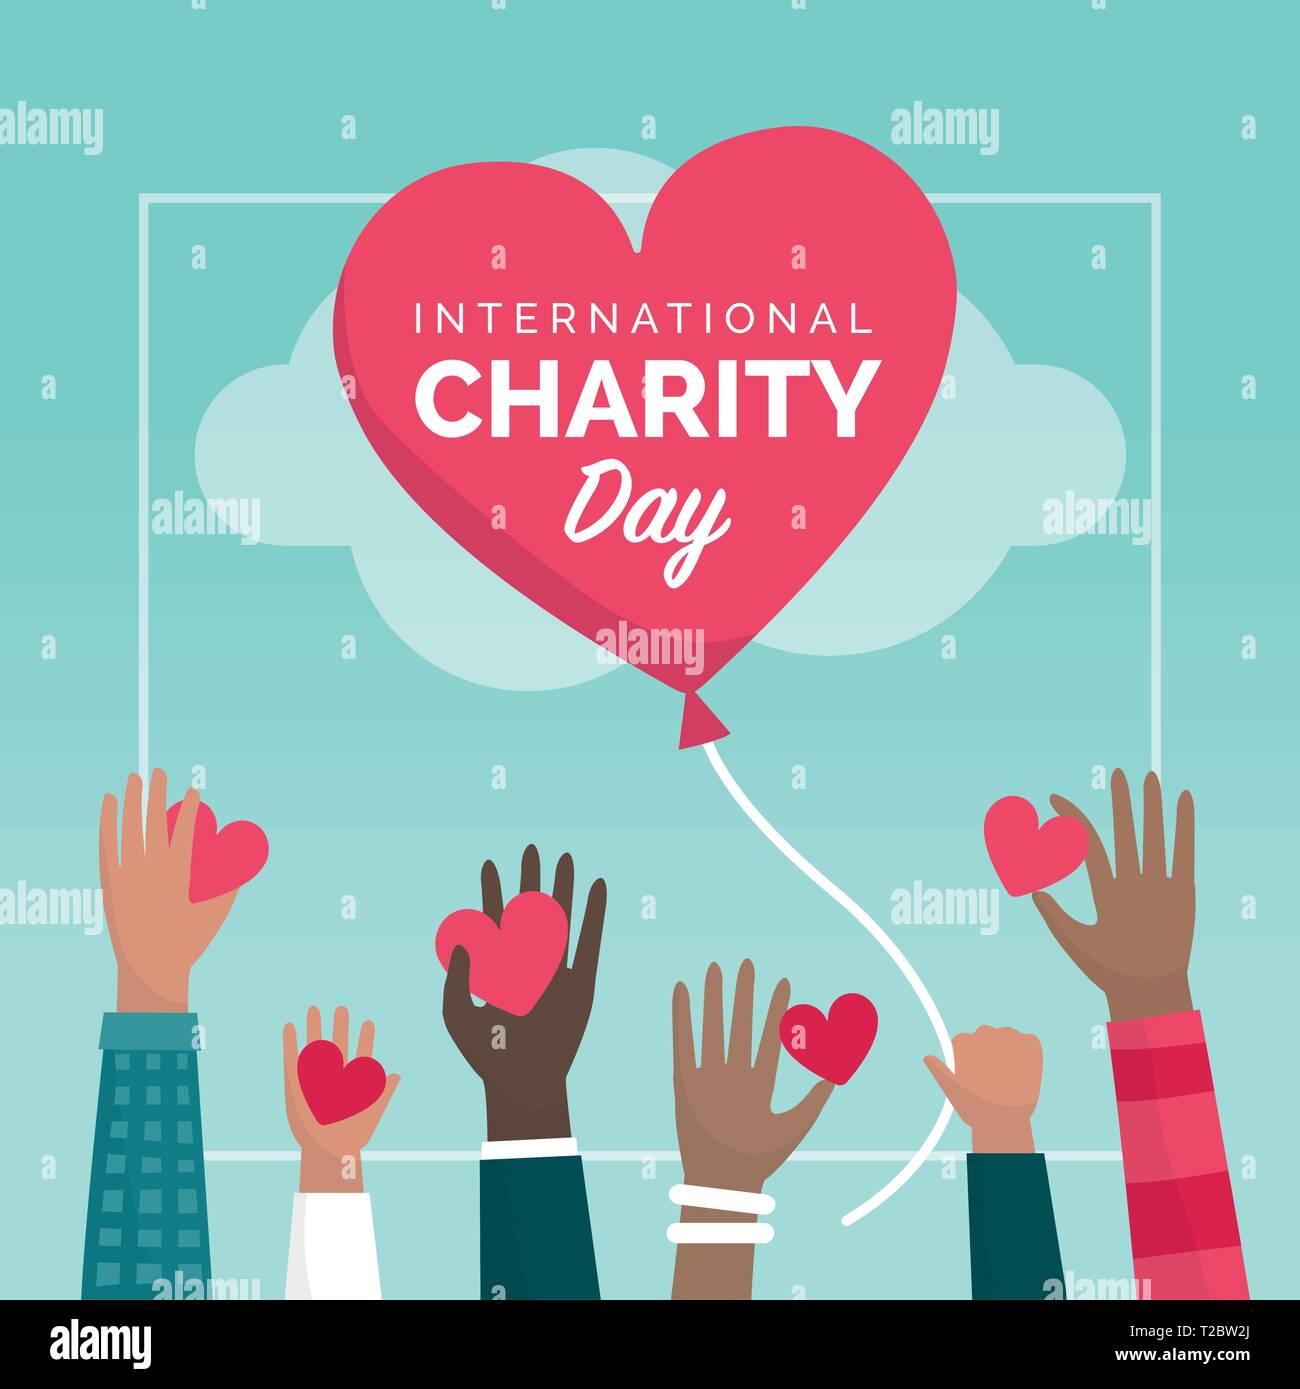 Internationale charity Tag Urlaub social media Post mit Menschen, Herzen und Spenden, Unterstützung und Finanzierung Konzept Stock Vektor